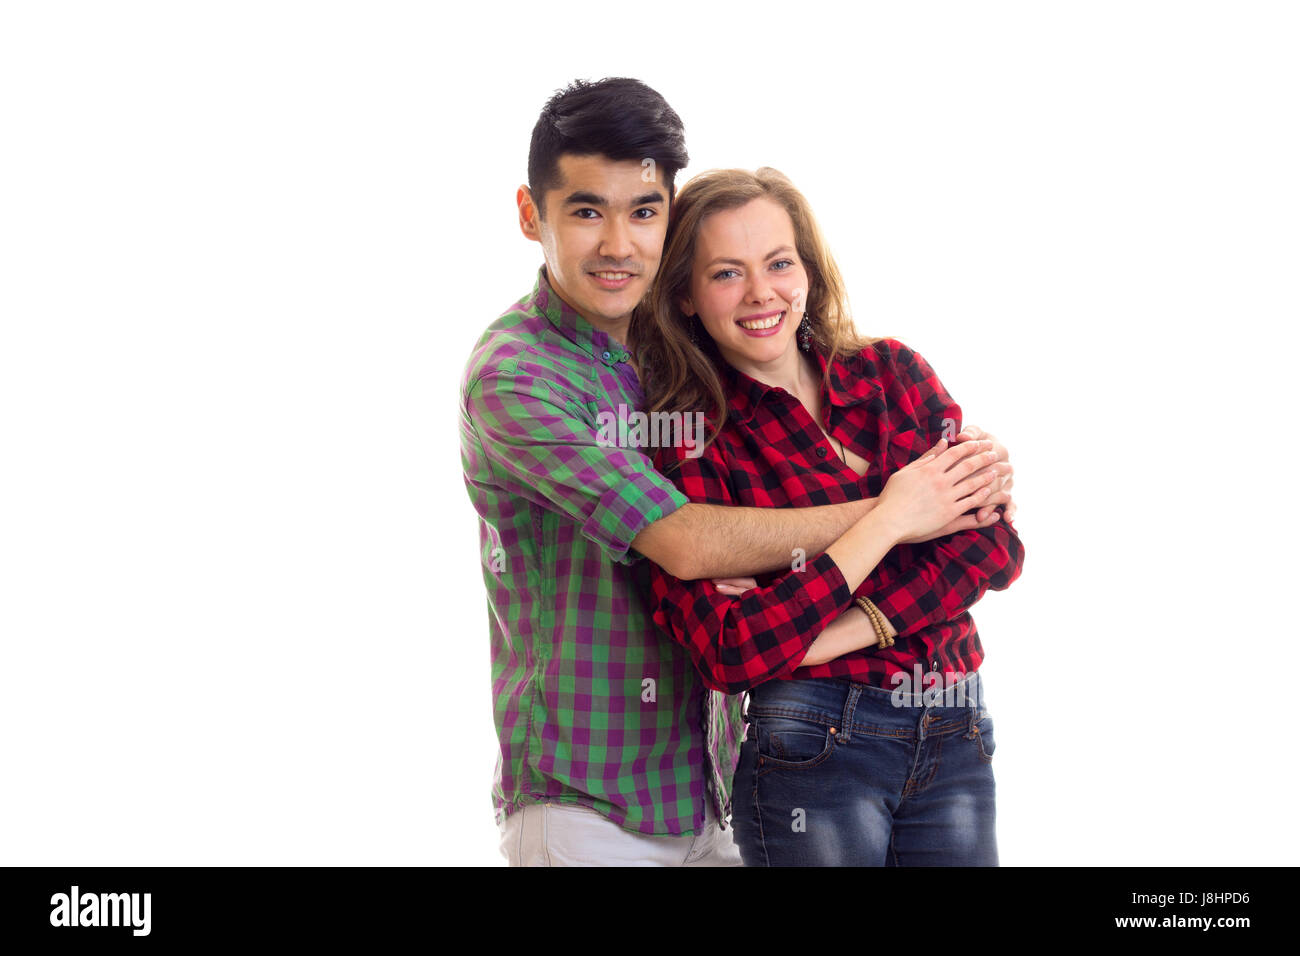 Junges Paar in karierten Hemden Stockfoto